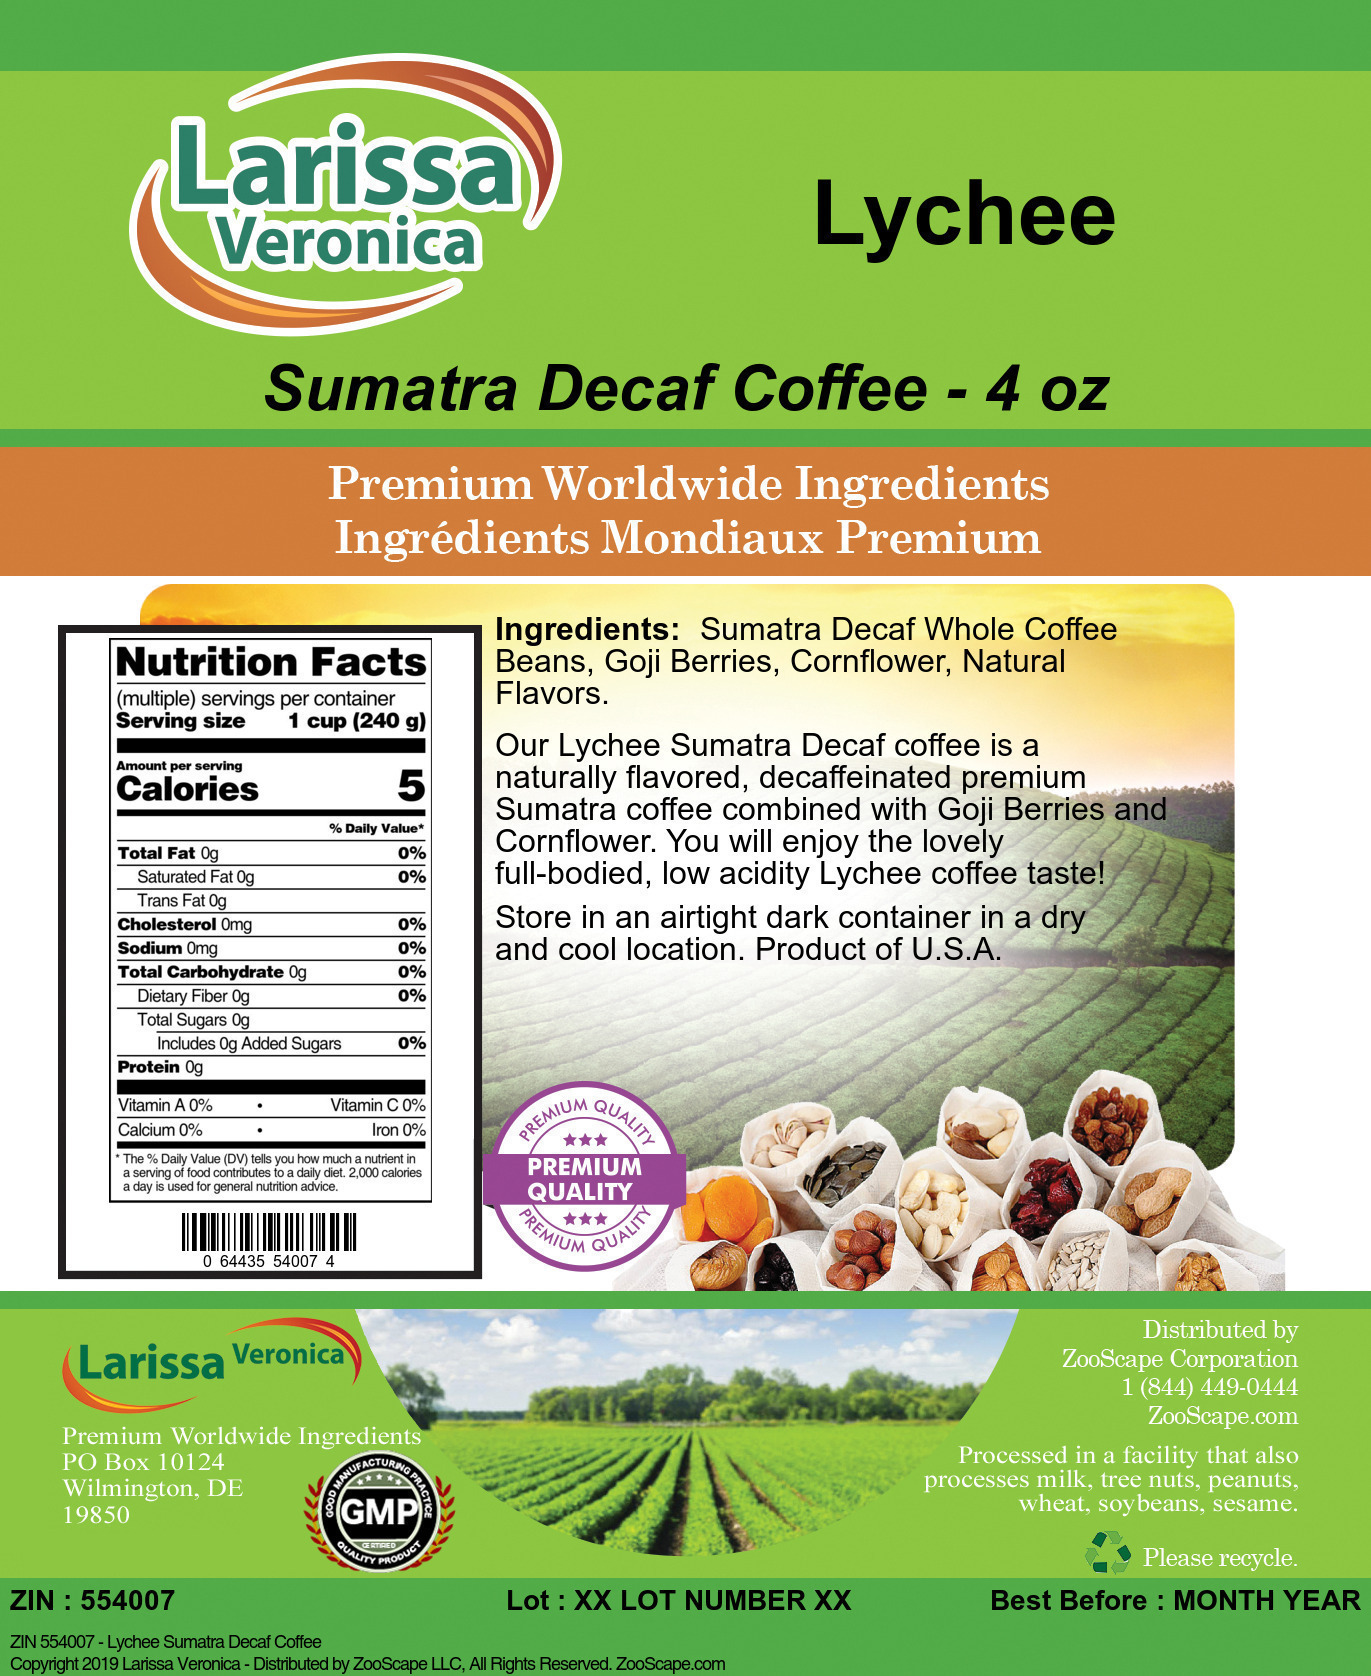 Lychee Sumatra Decaf Coffee - Label